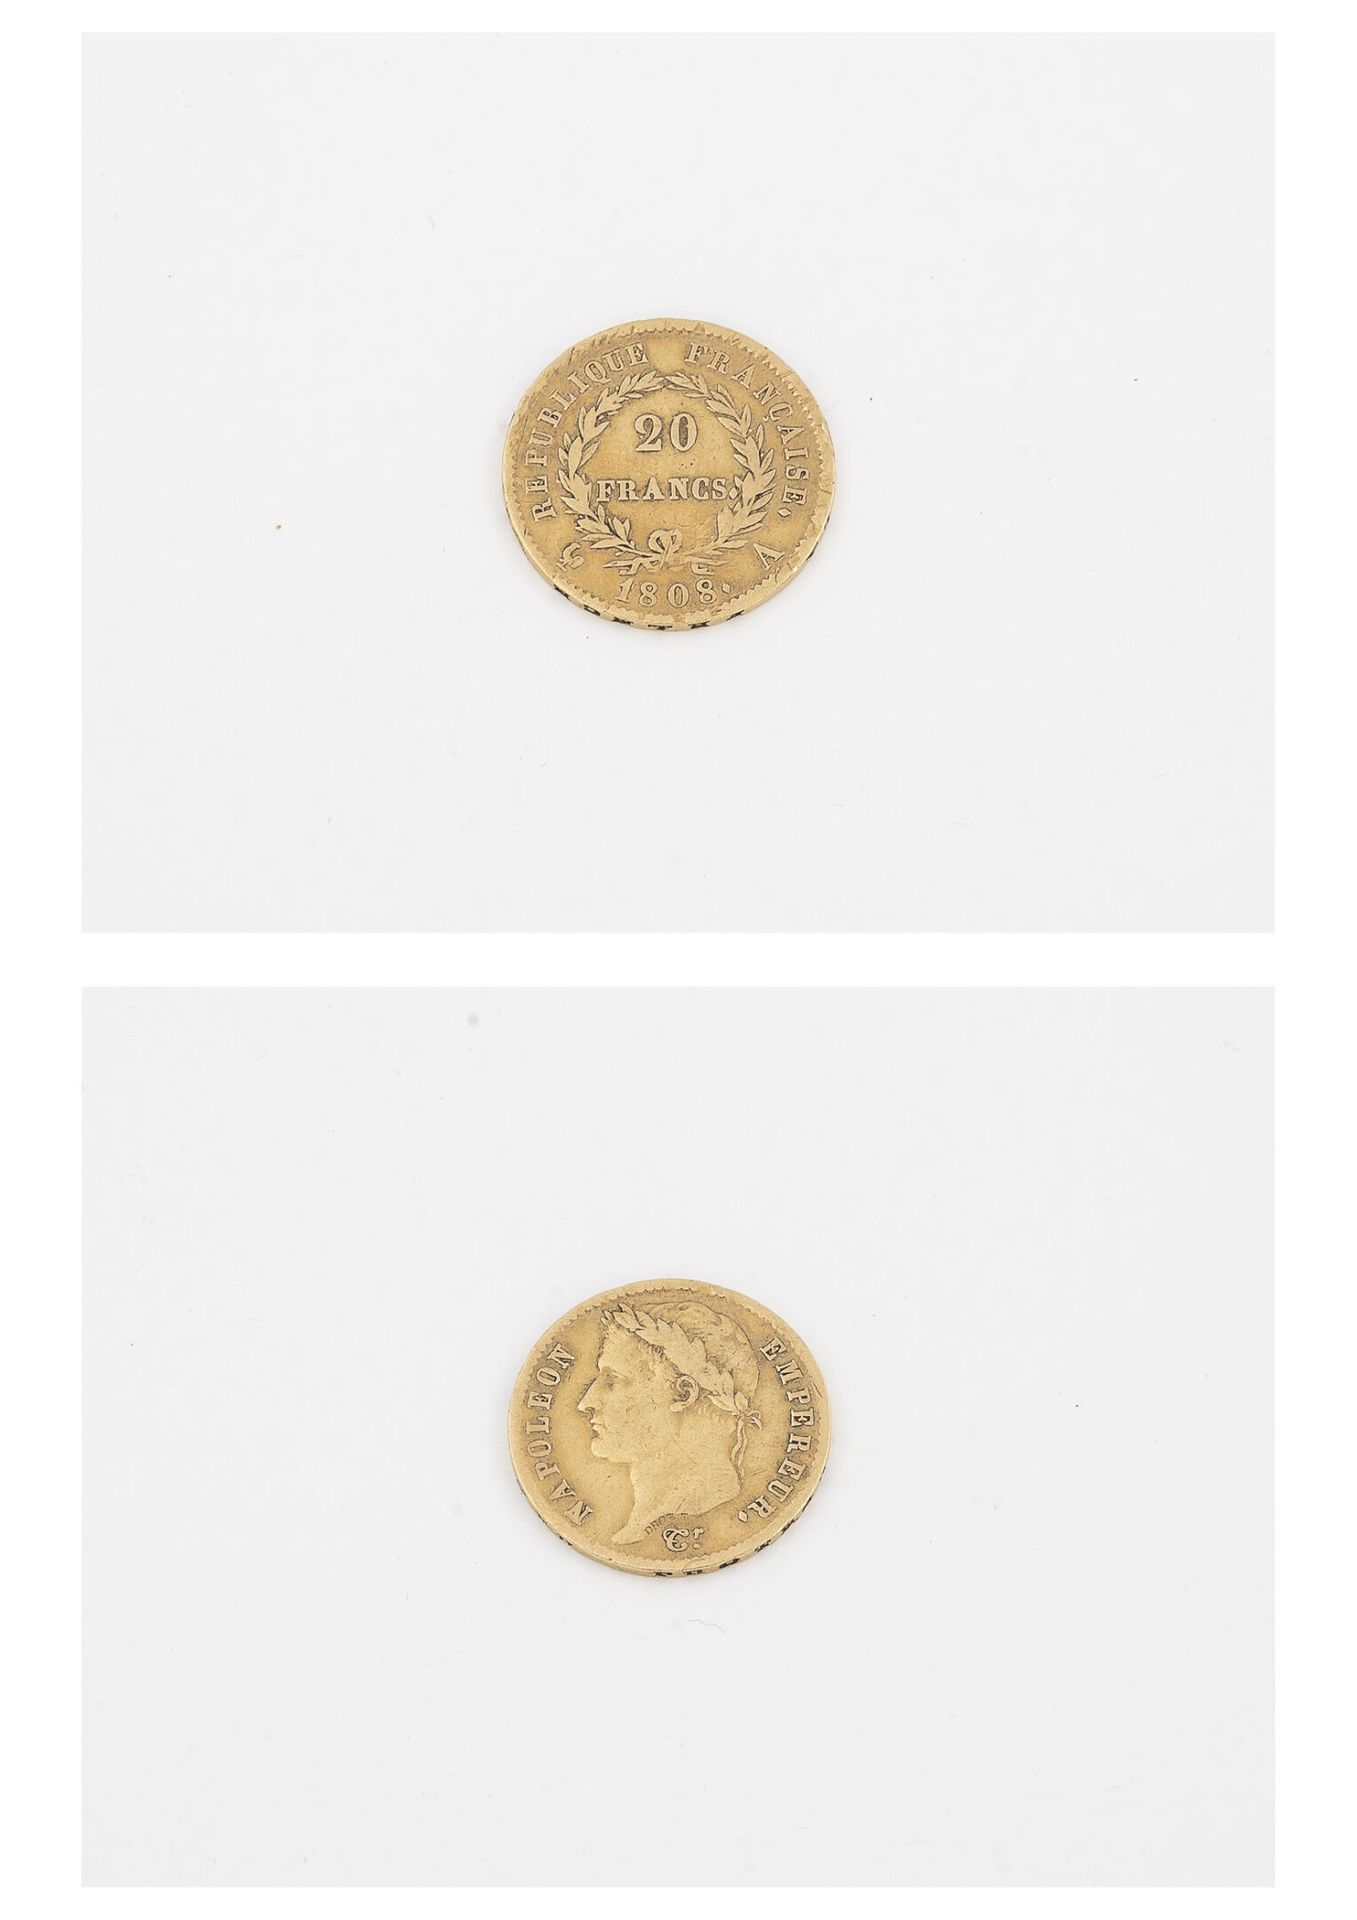 France 20法郎金币，1808年，拿破仑皇帝。

重量：6.4克。

磨损和划痕。